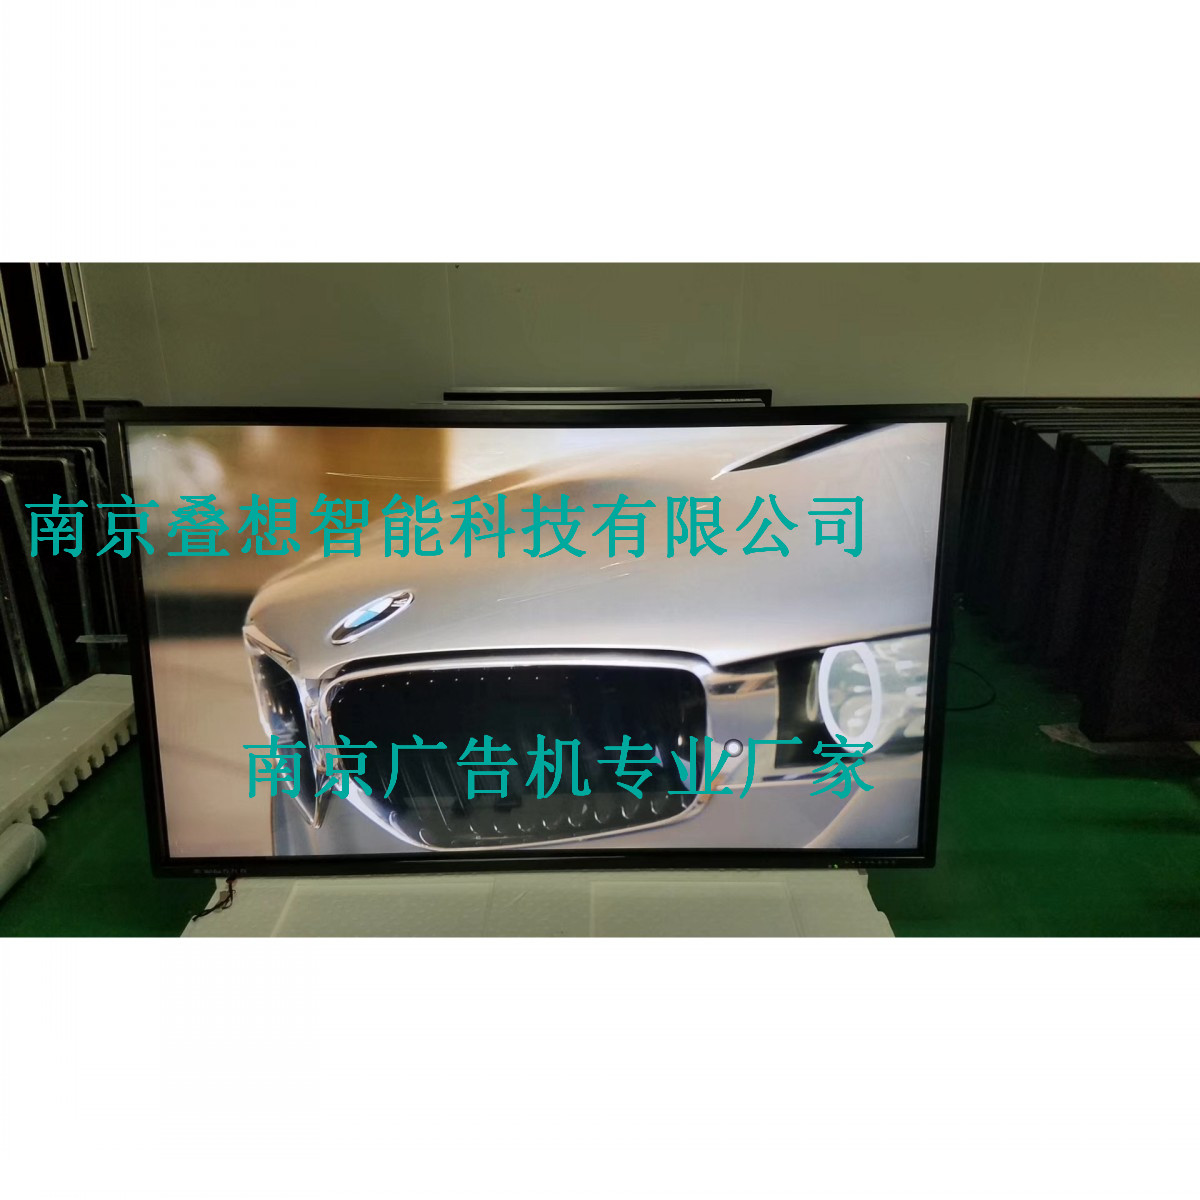 江苏广告机厂家直销叠想32寸新款安卓网络广告机2